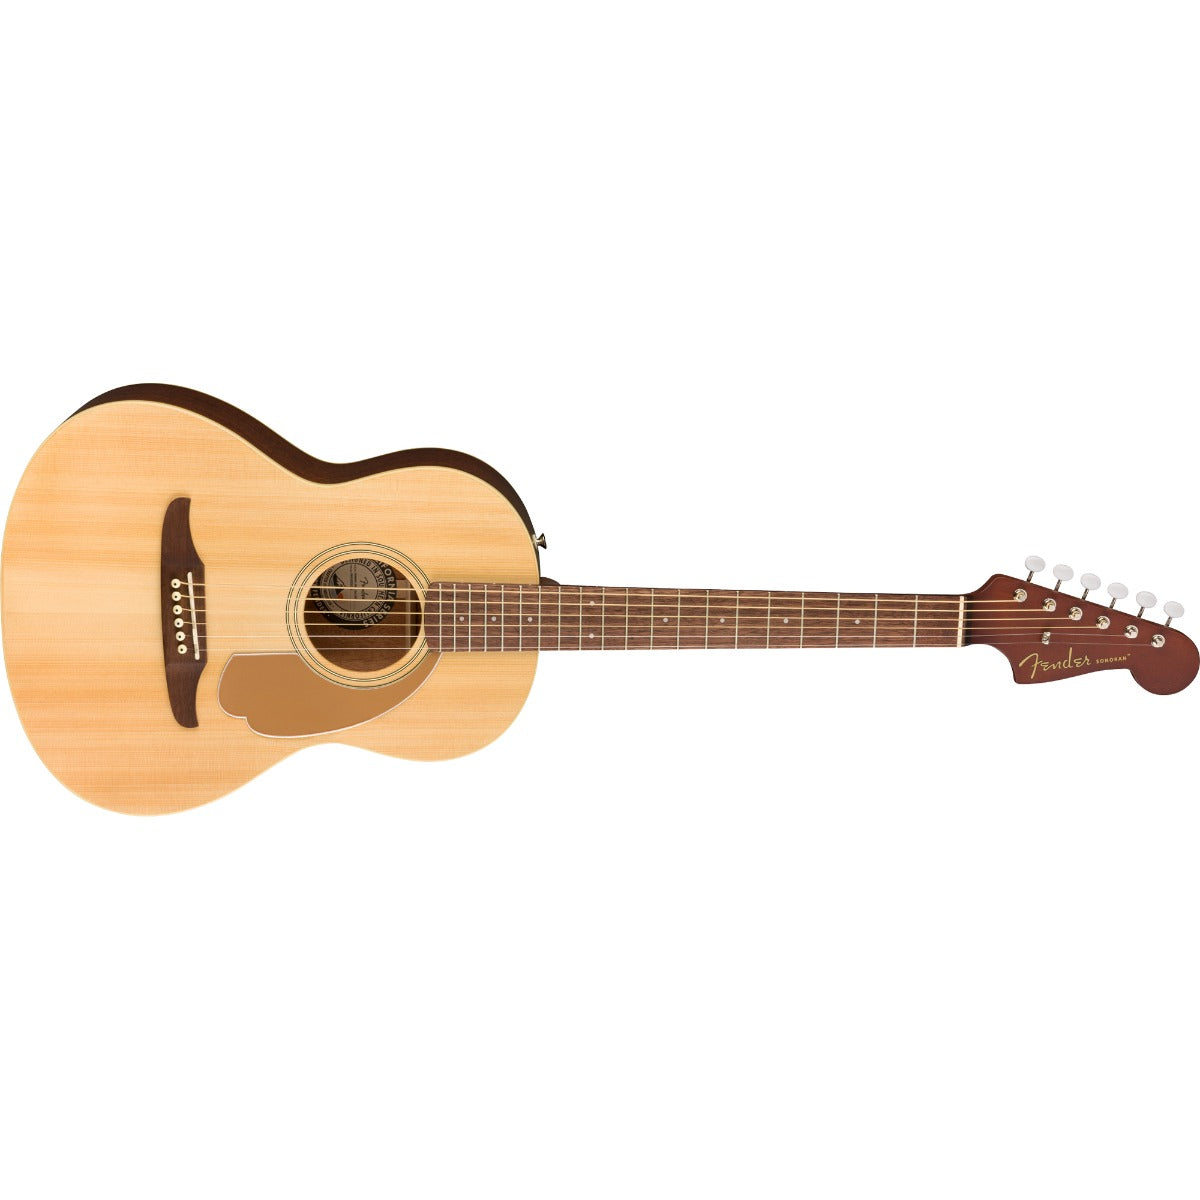 Fender Sonoran Mini Acoustic Guitar with Bag - Natural